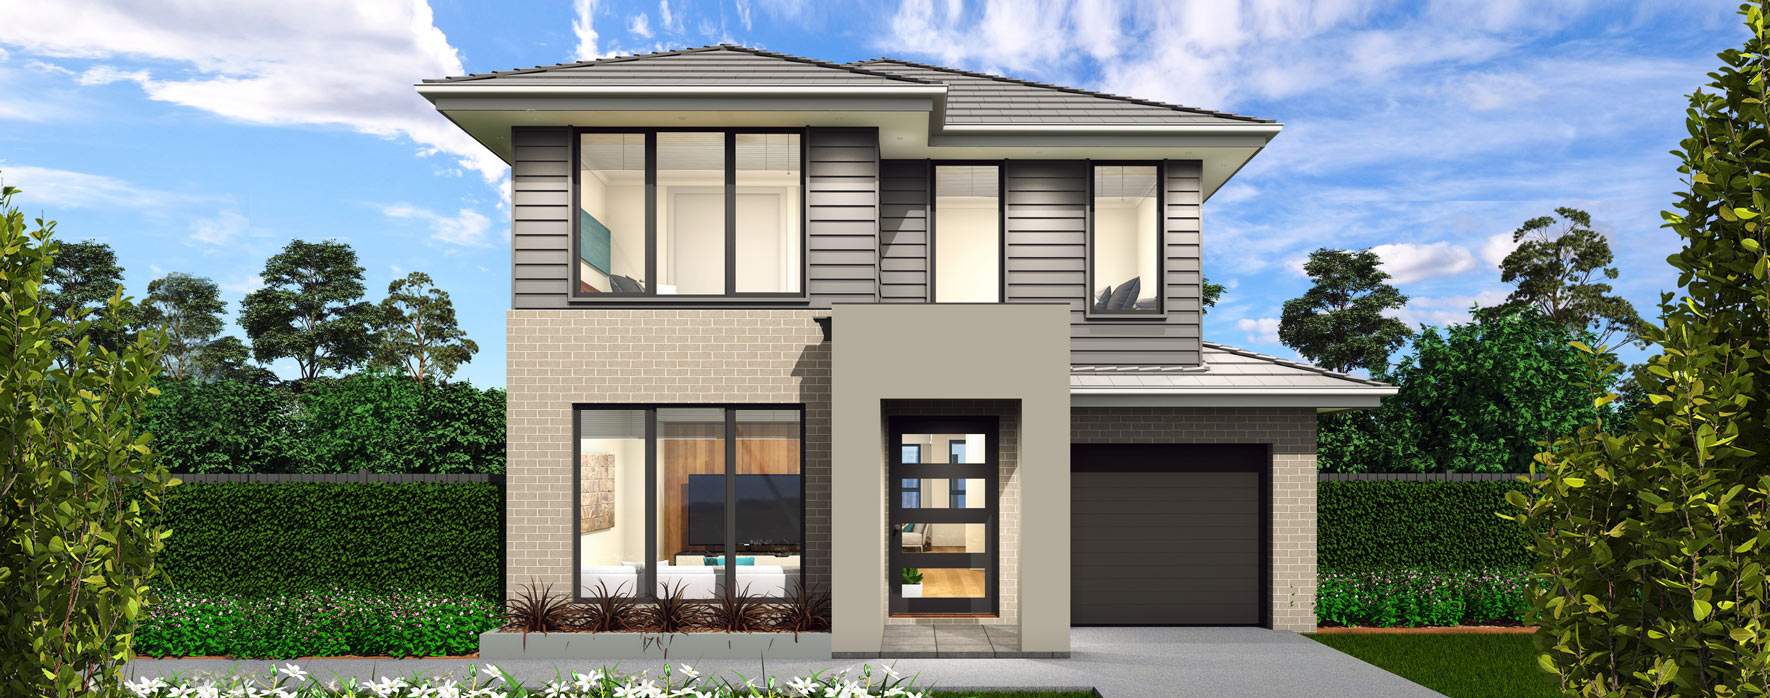 Lido 28-Home Design-Modern facade